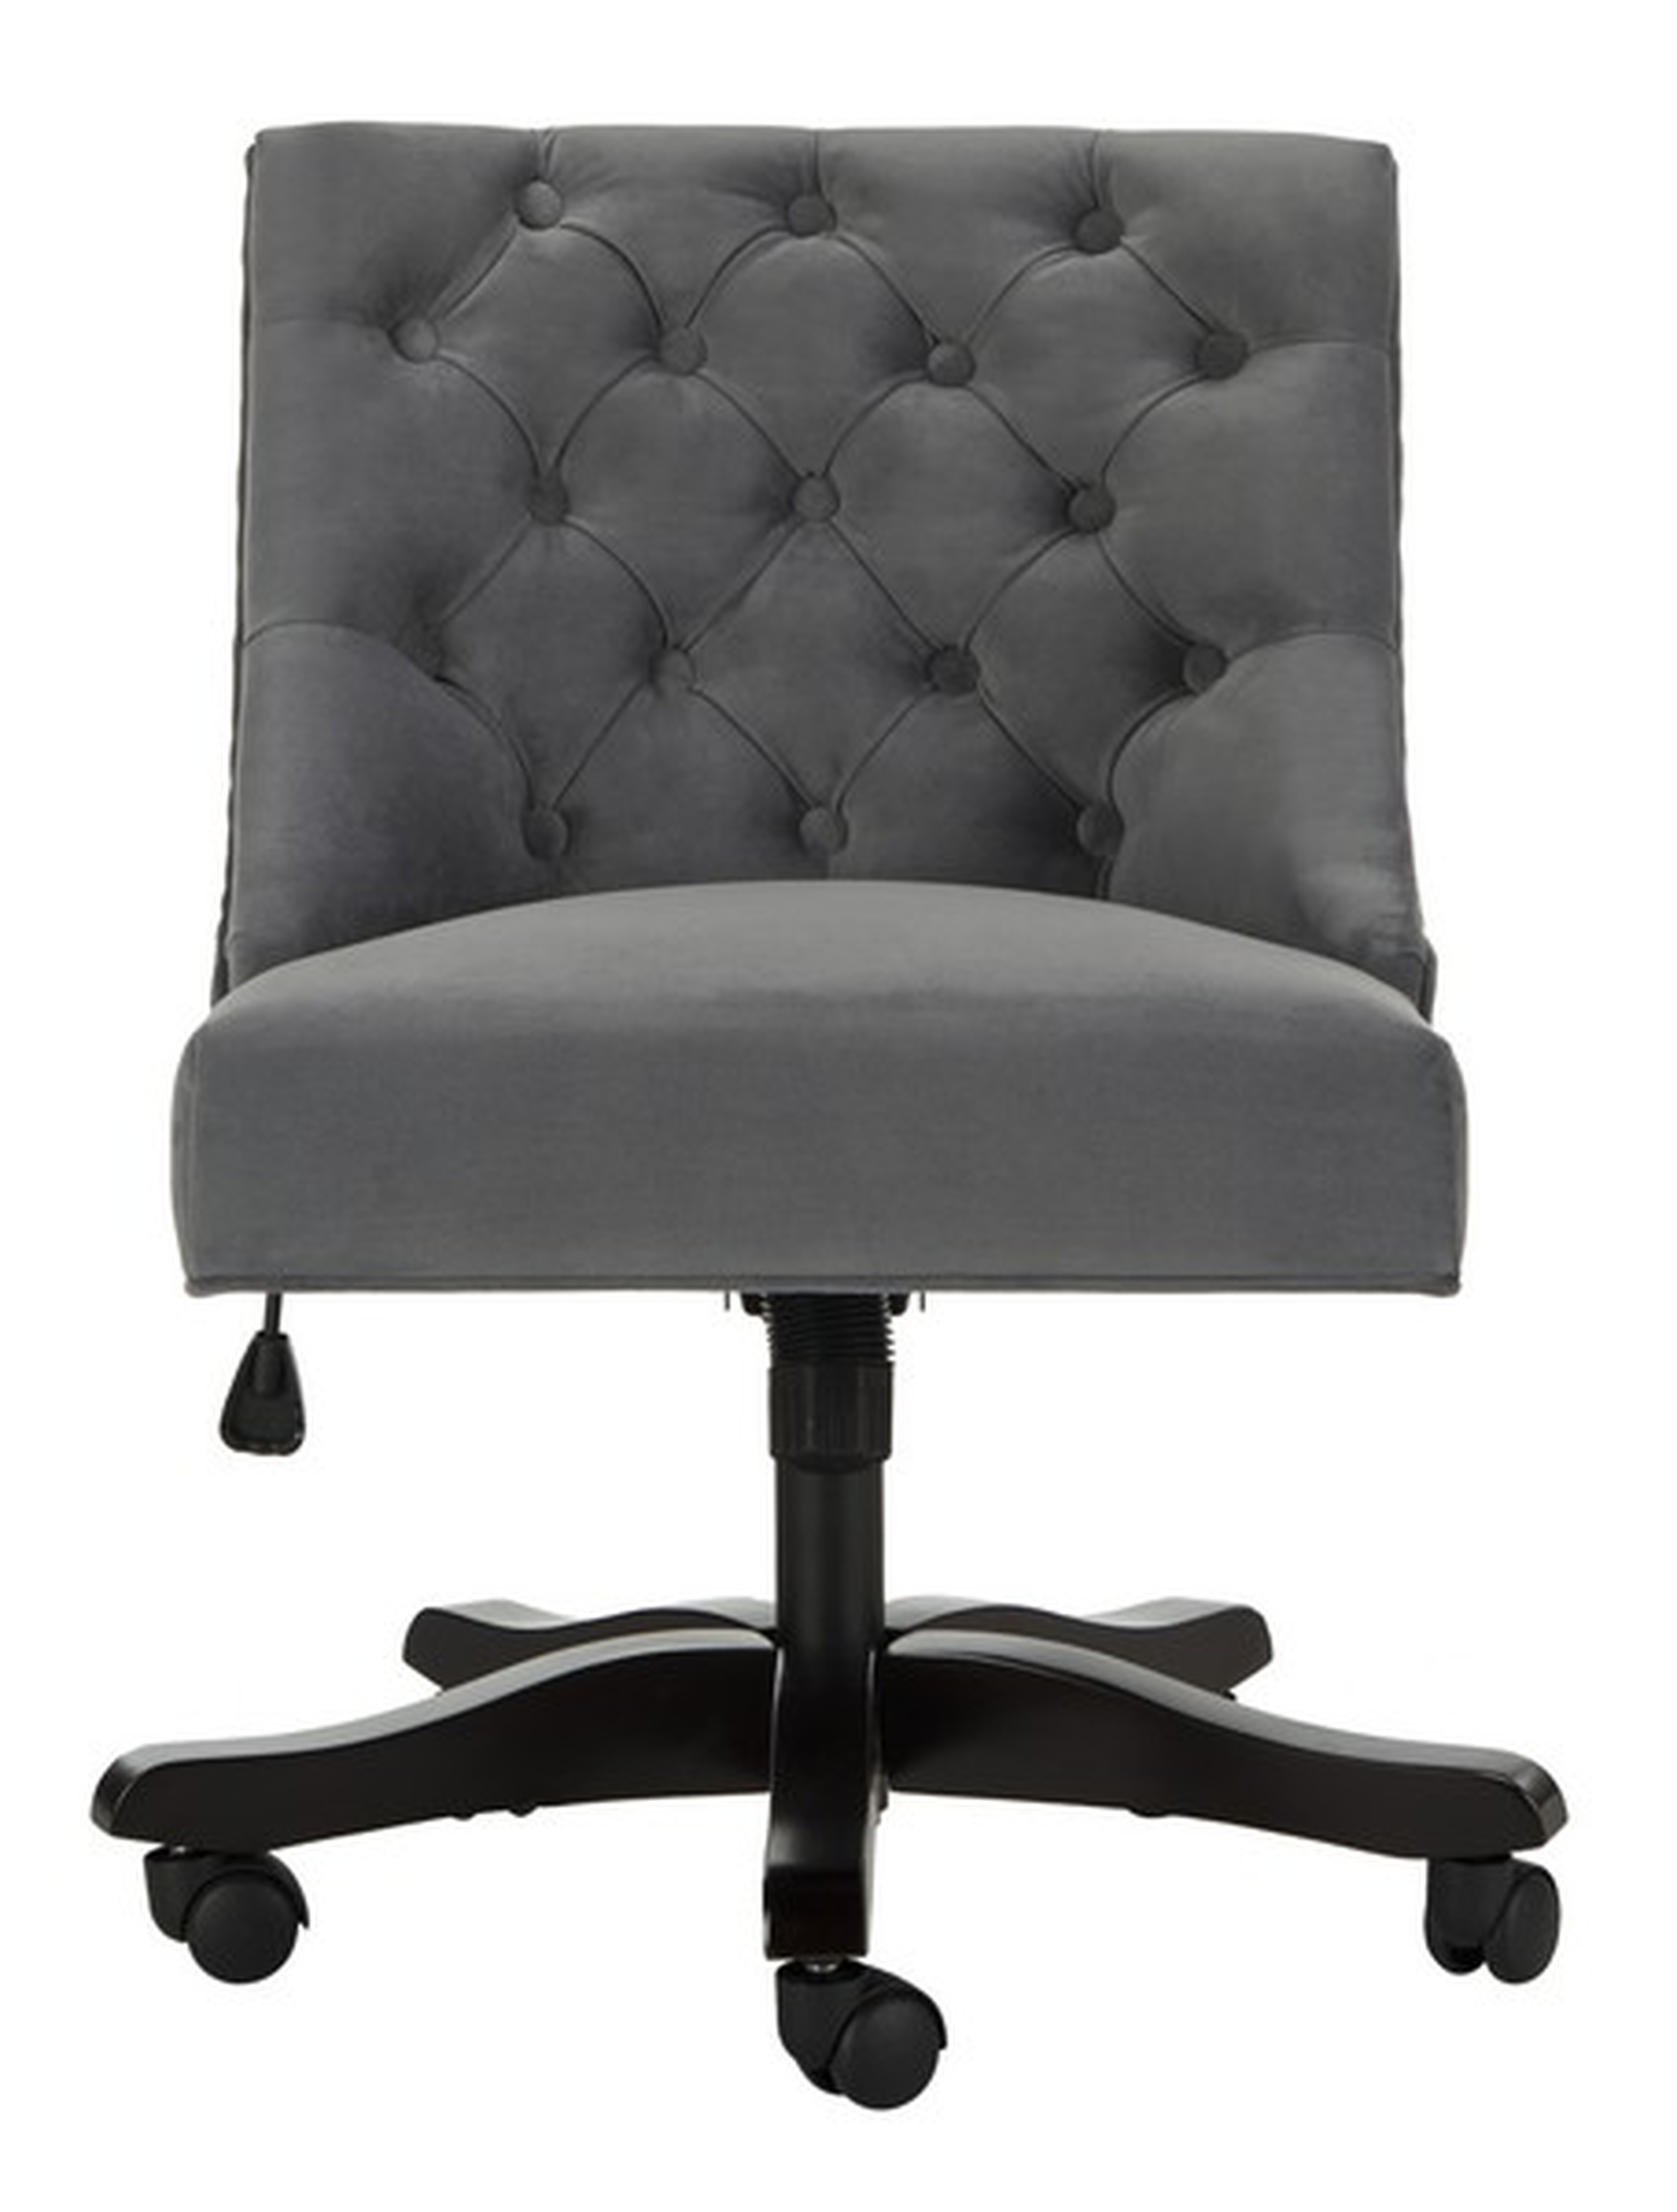 Soho Tufted Velvet Swivel Desk Chair - Grey - Arlo Home - Arlo Home